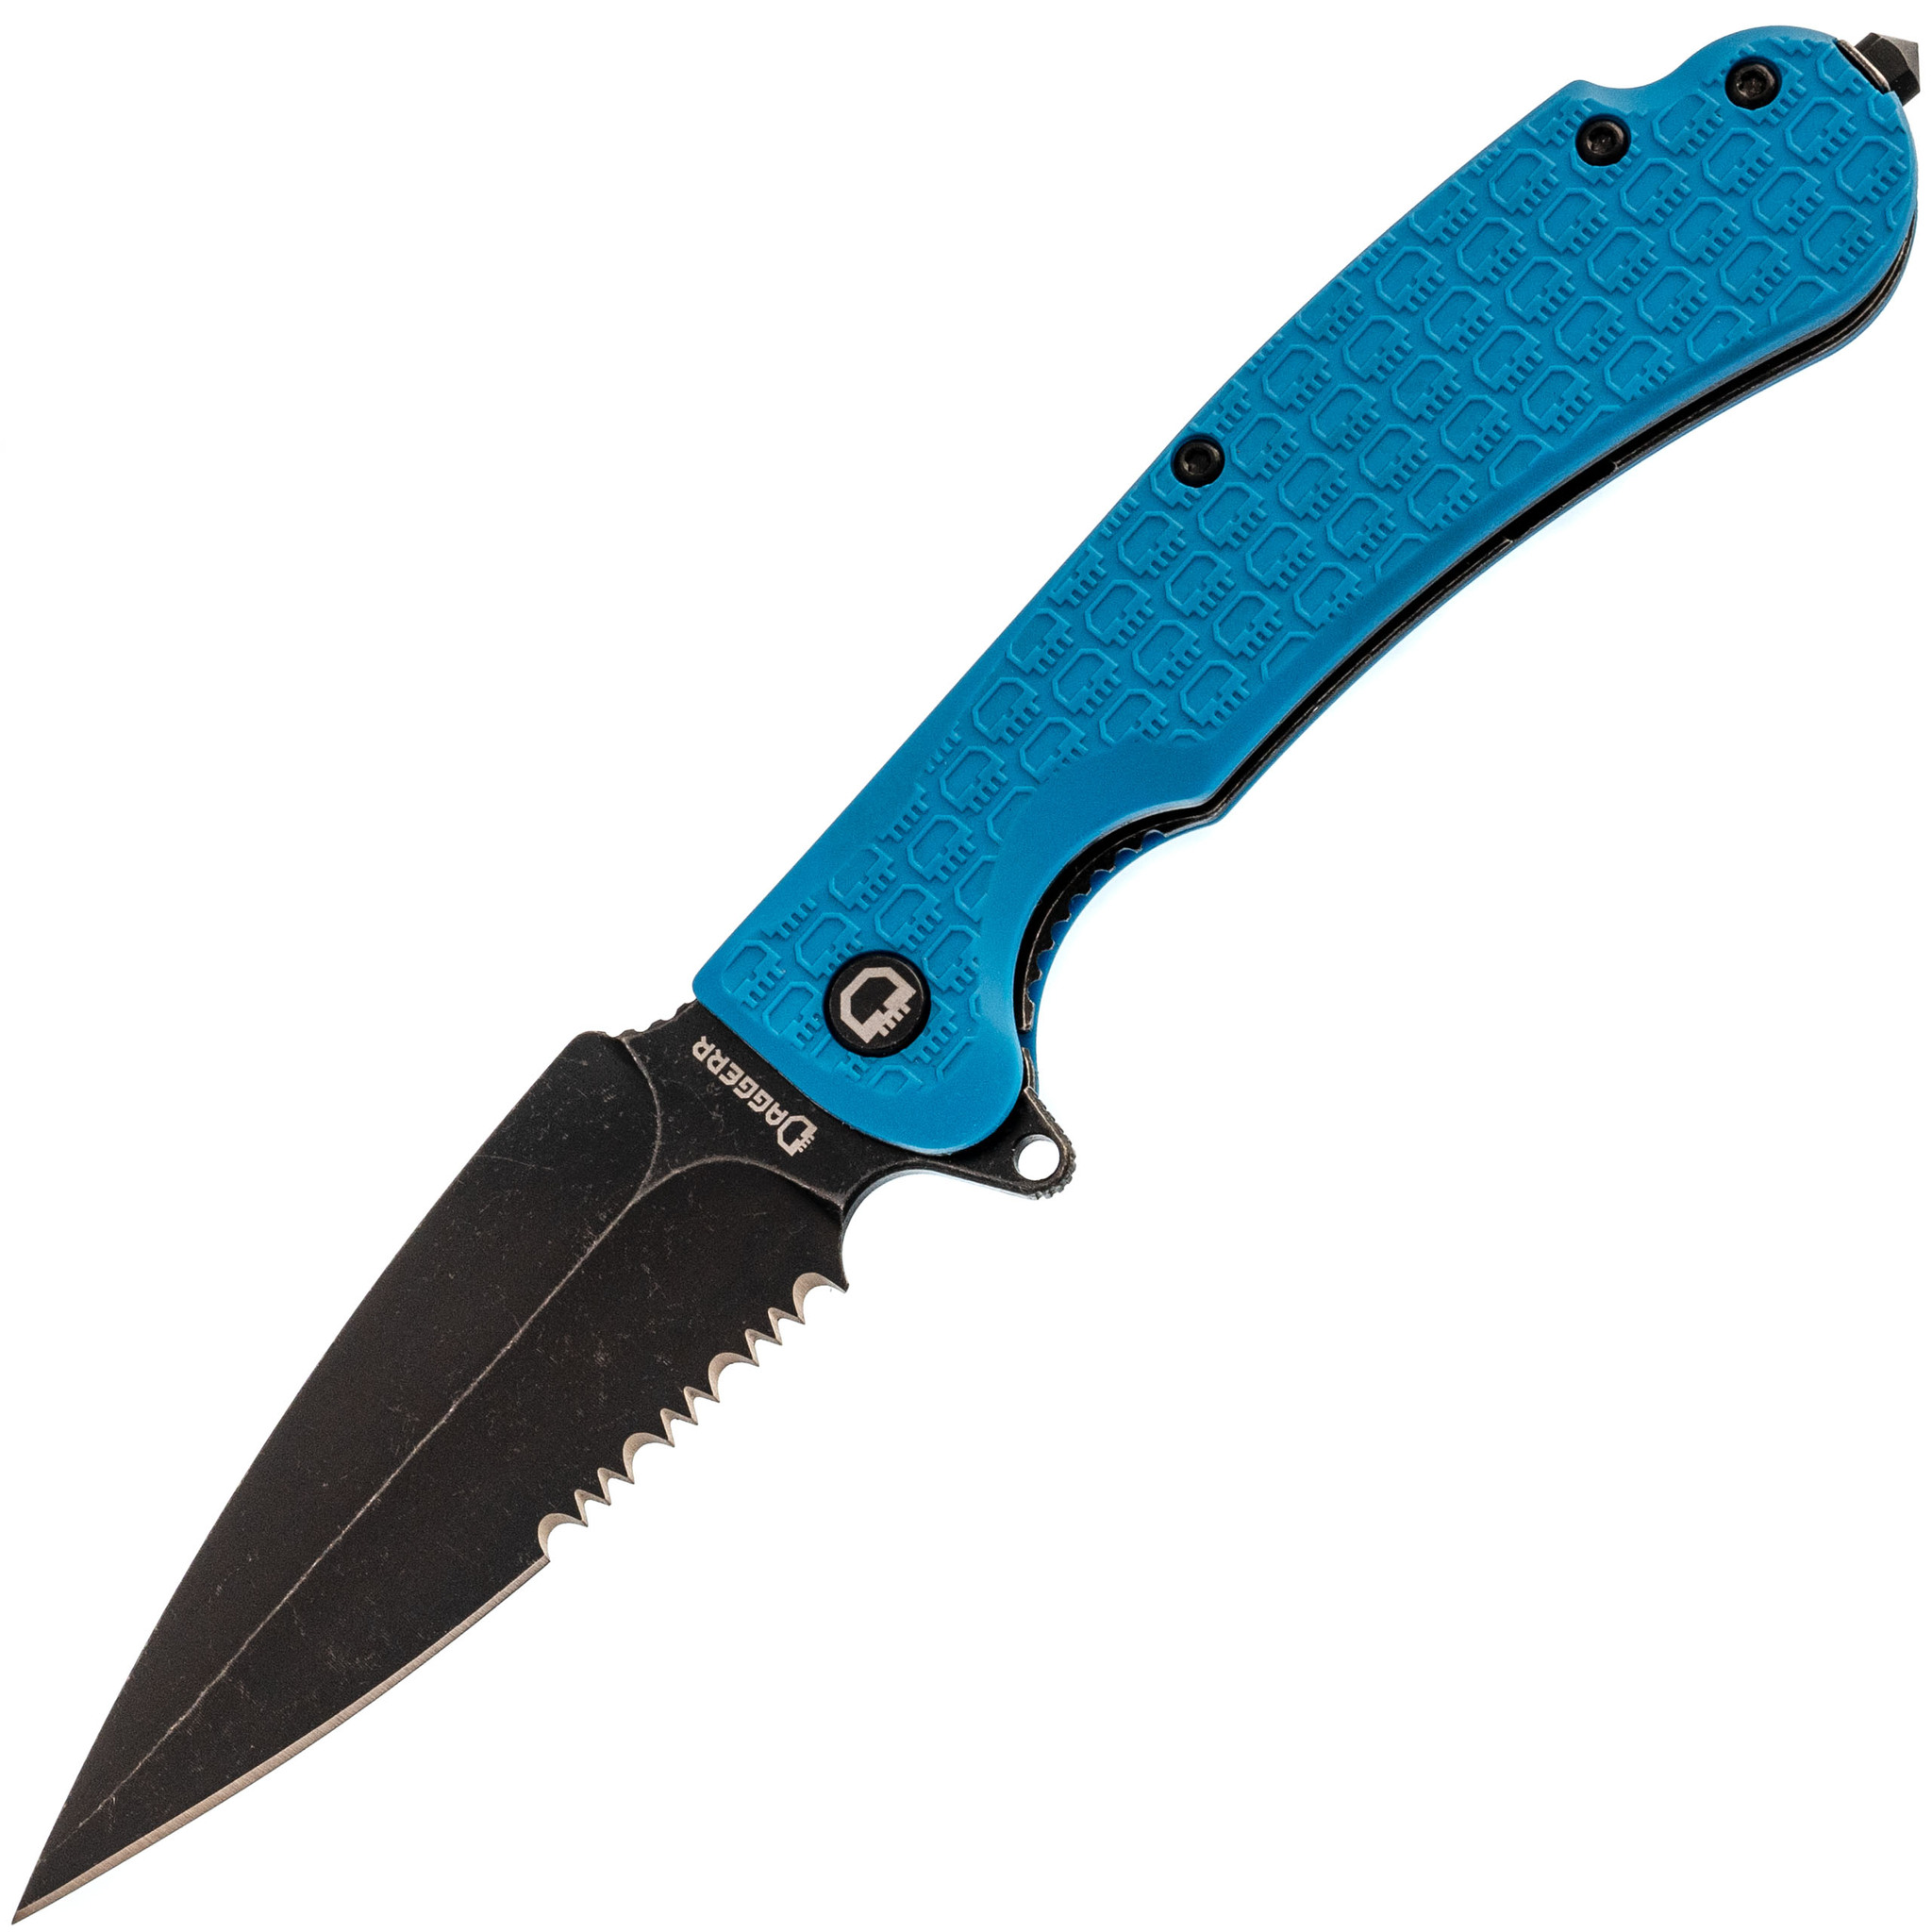 Складной нож Daggerr Urban 2 Blue BW Serrated, сталь 8Cr14MoV, рукоять FRN, Бренды, DAGGERR